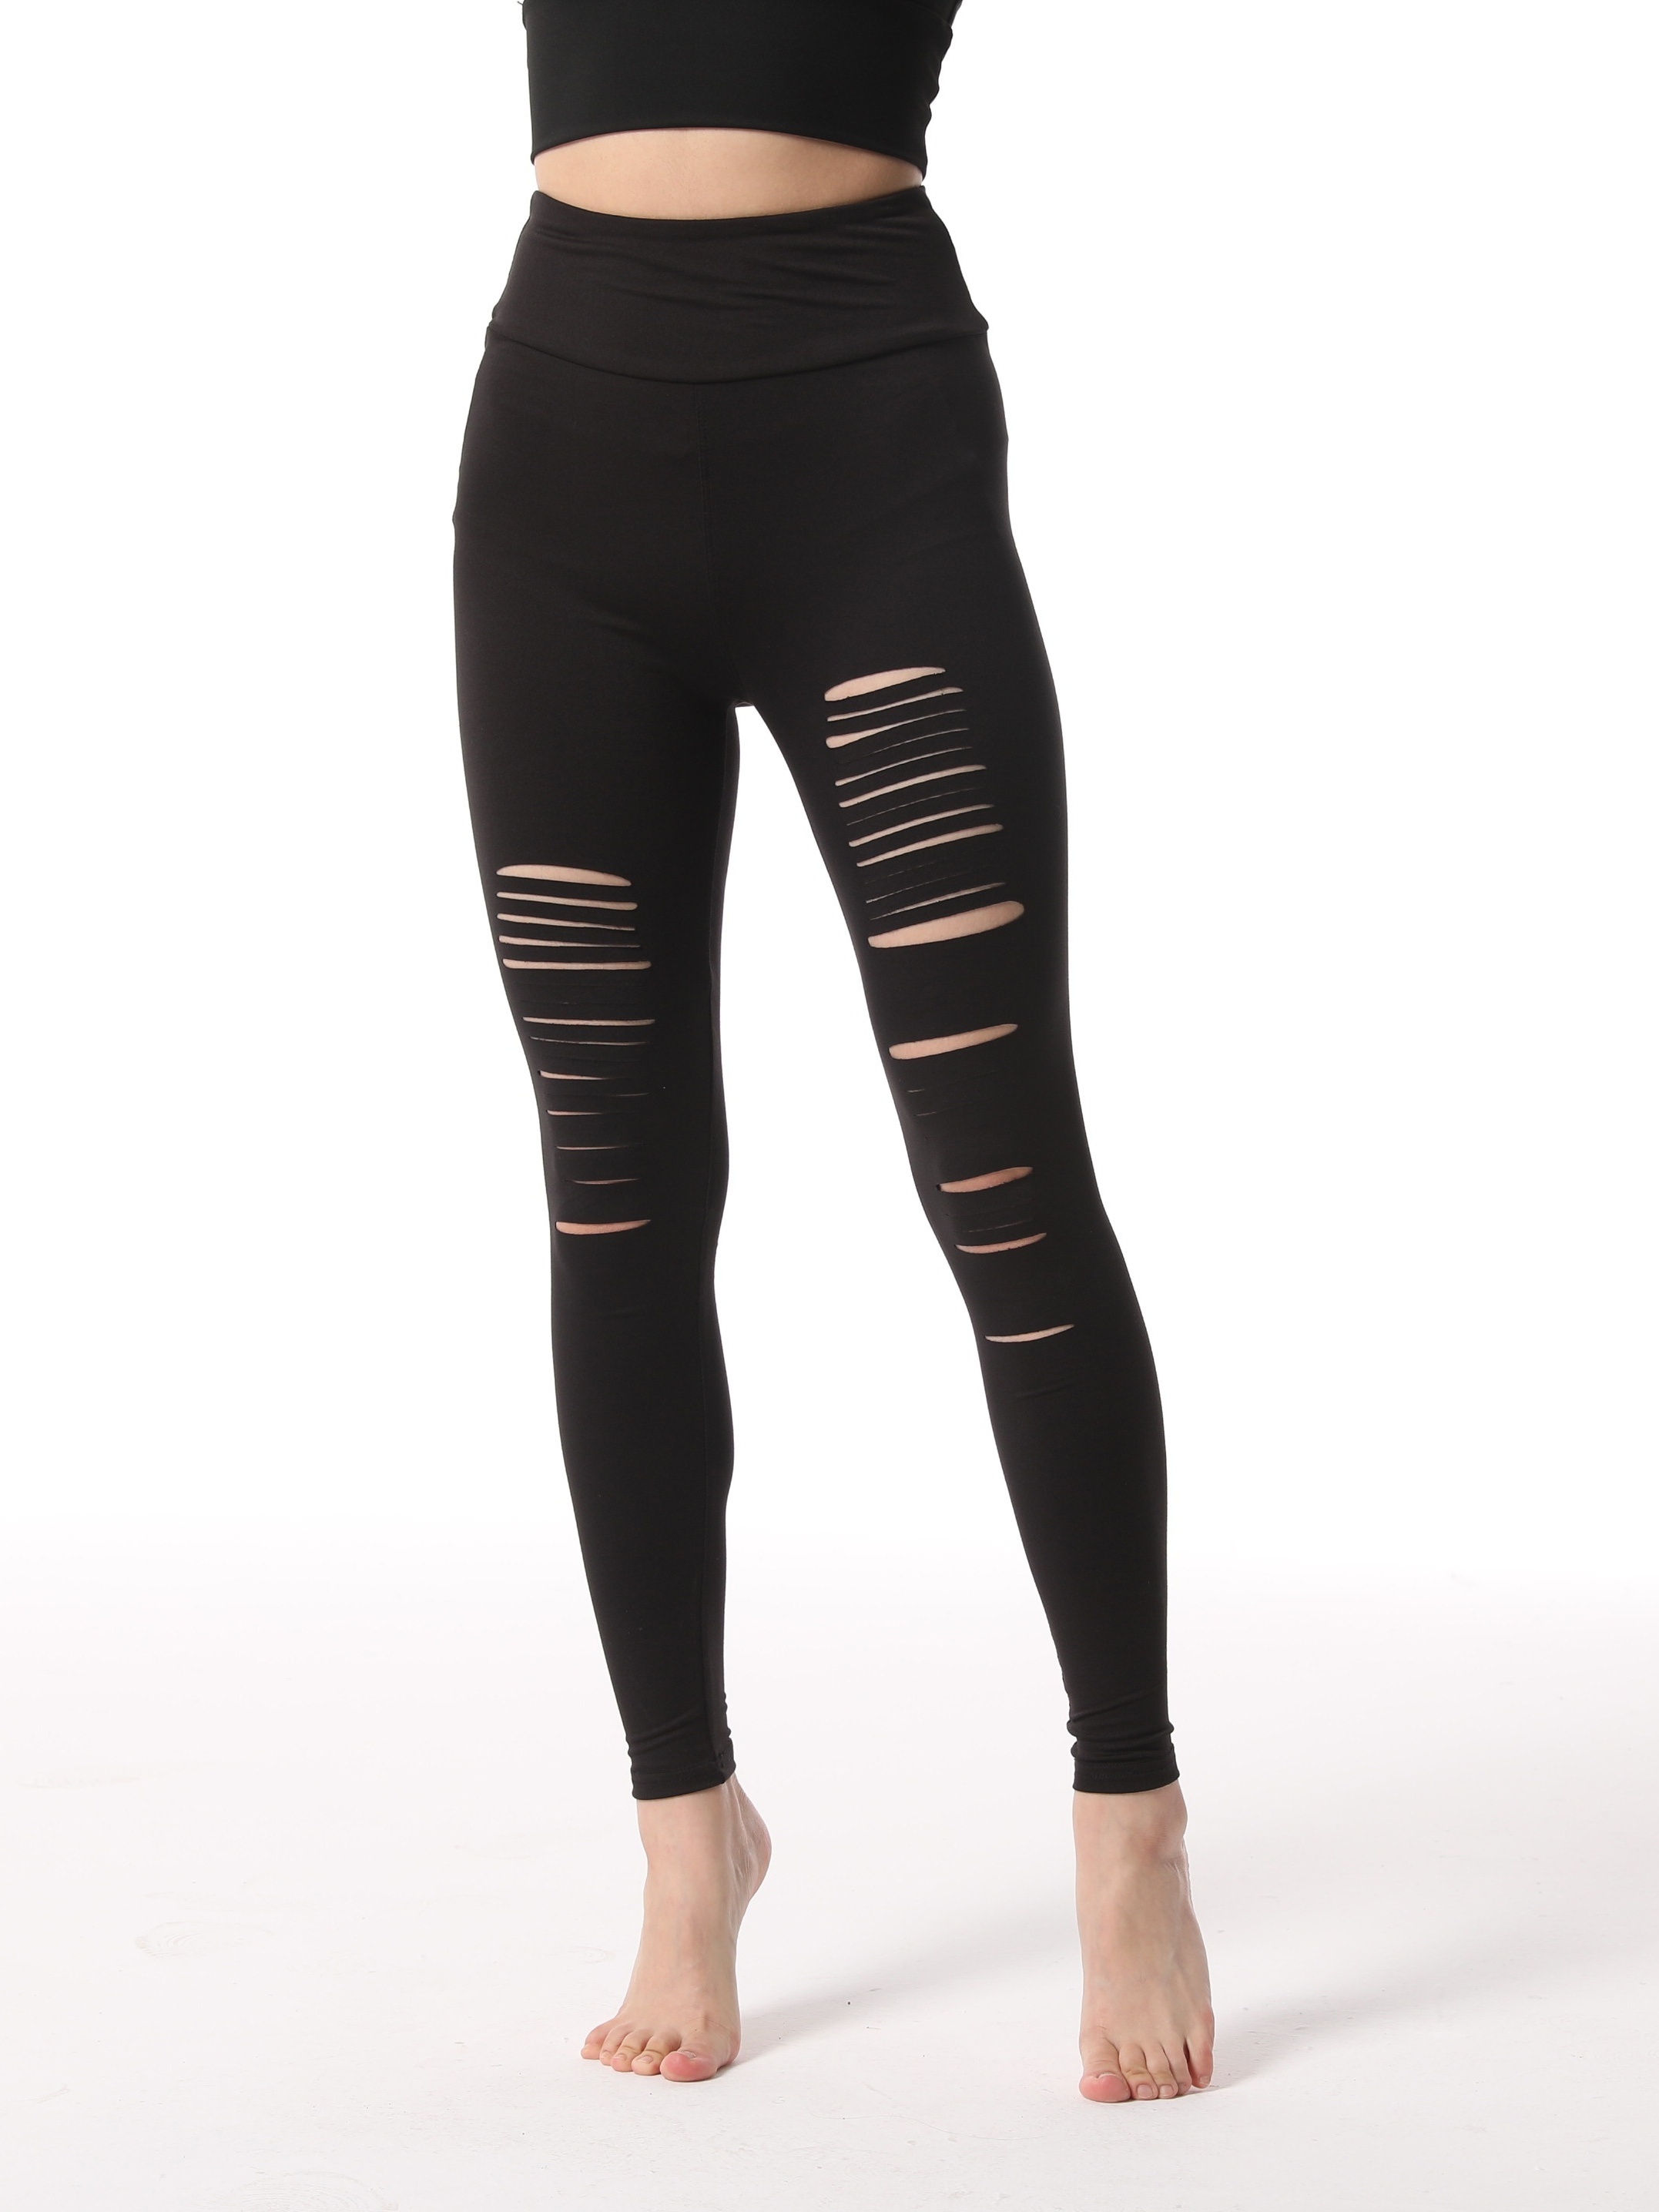 Adogirl Women's Black Tights Sheer Mesh Printed Pants Elastic Skinny  Leggings at  Women's Clothing store